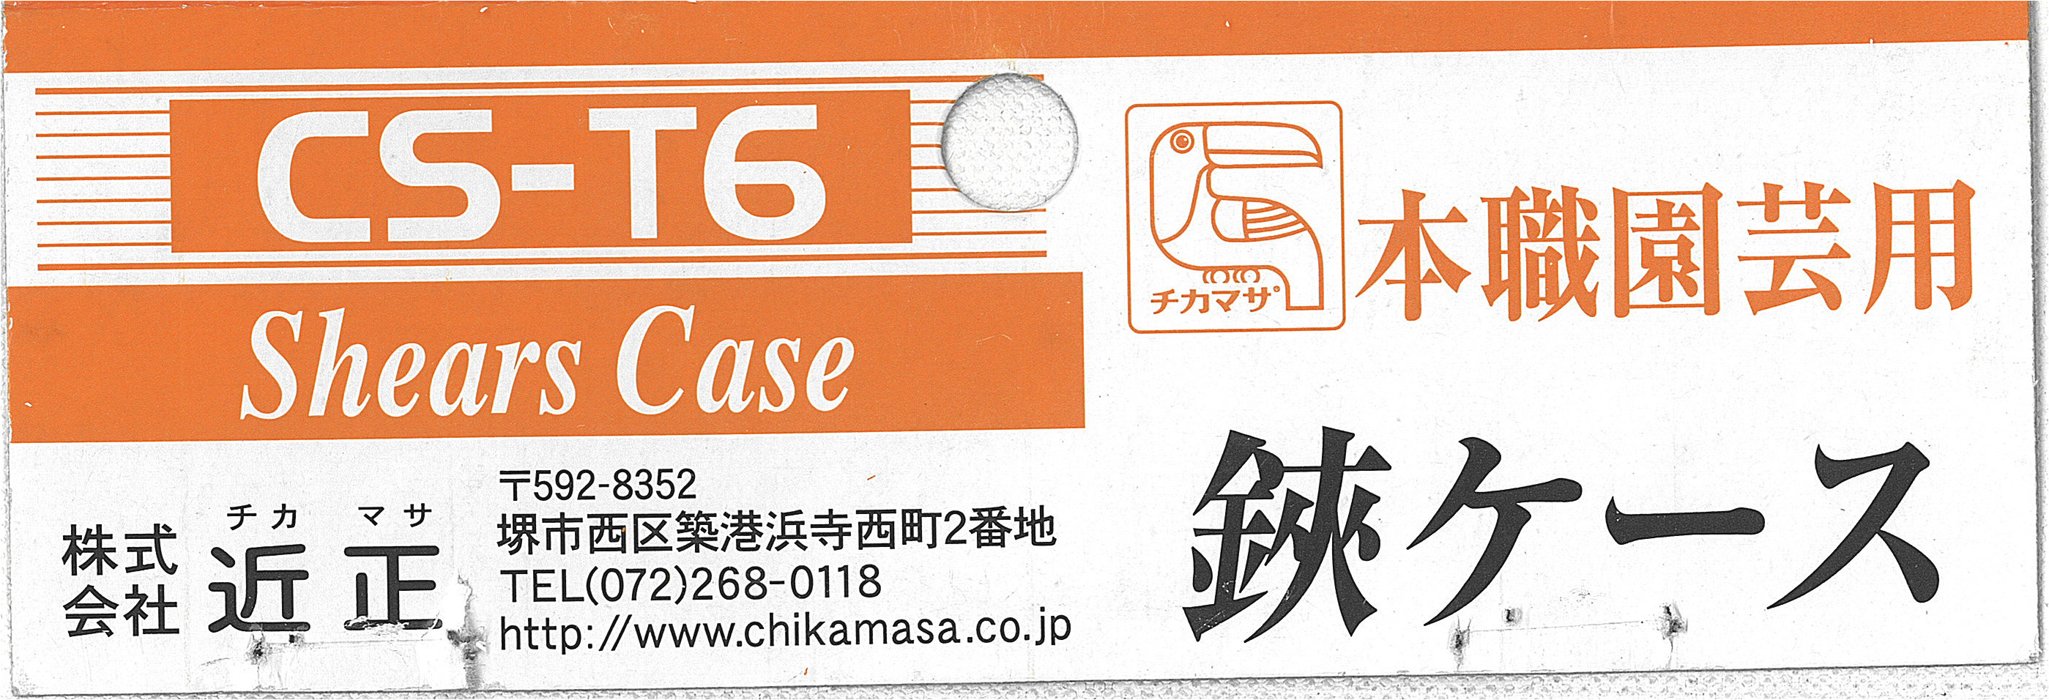 Chikamasa CS-T6 Scissors Case